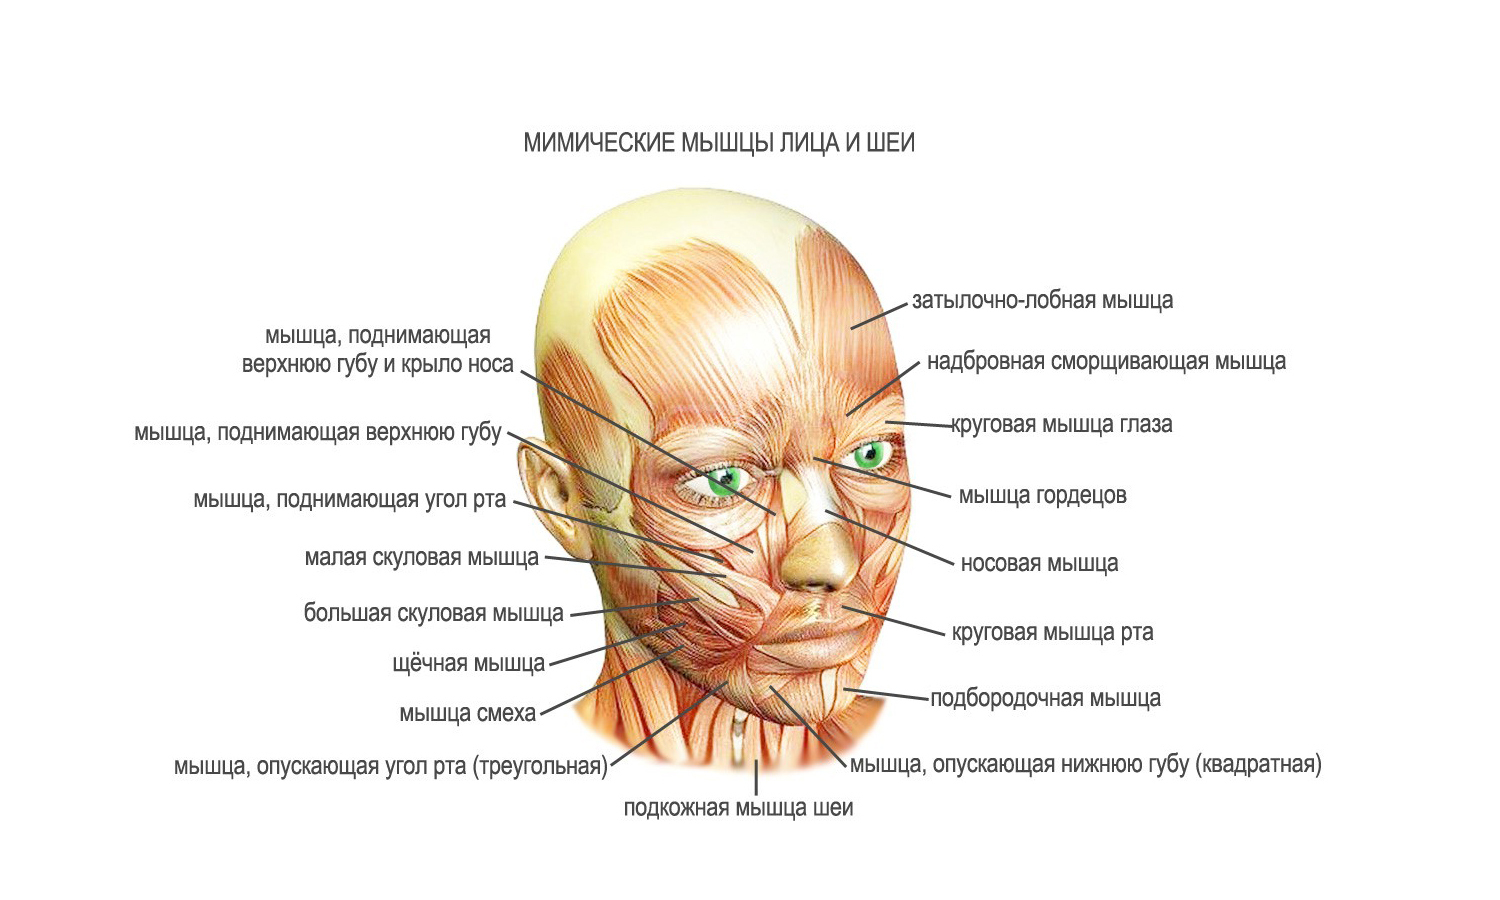 Верхняя часть лба. Мышцы лица анатомия для косметологов для массажа. Мышцы лица и шеи анатомия для косметологов. Мимические мышцы лица и мышцы шеи анатомия. Мимические мышцы лица анатомия функции.